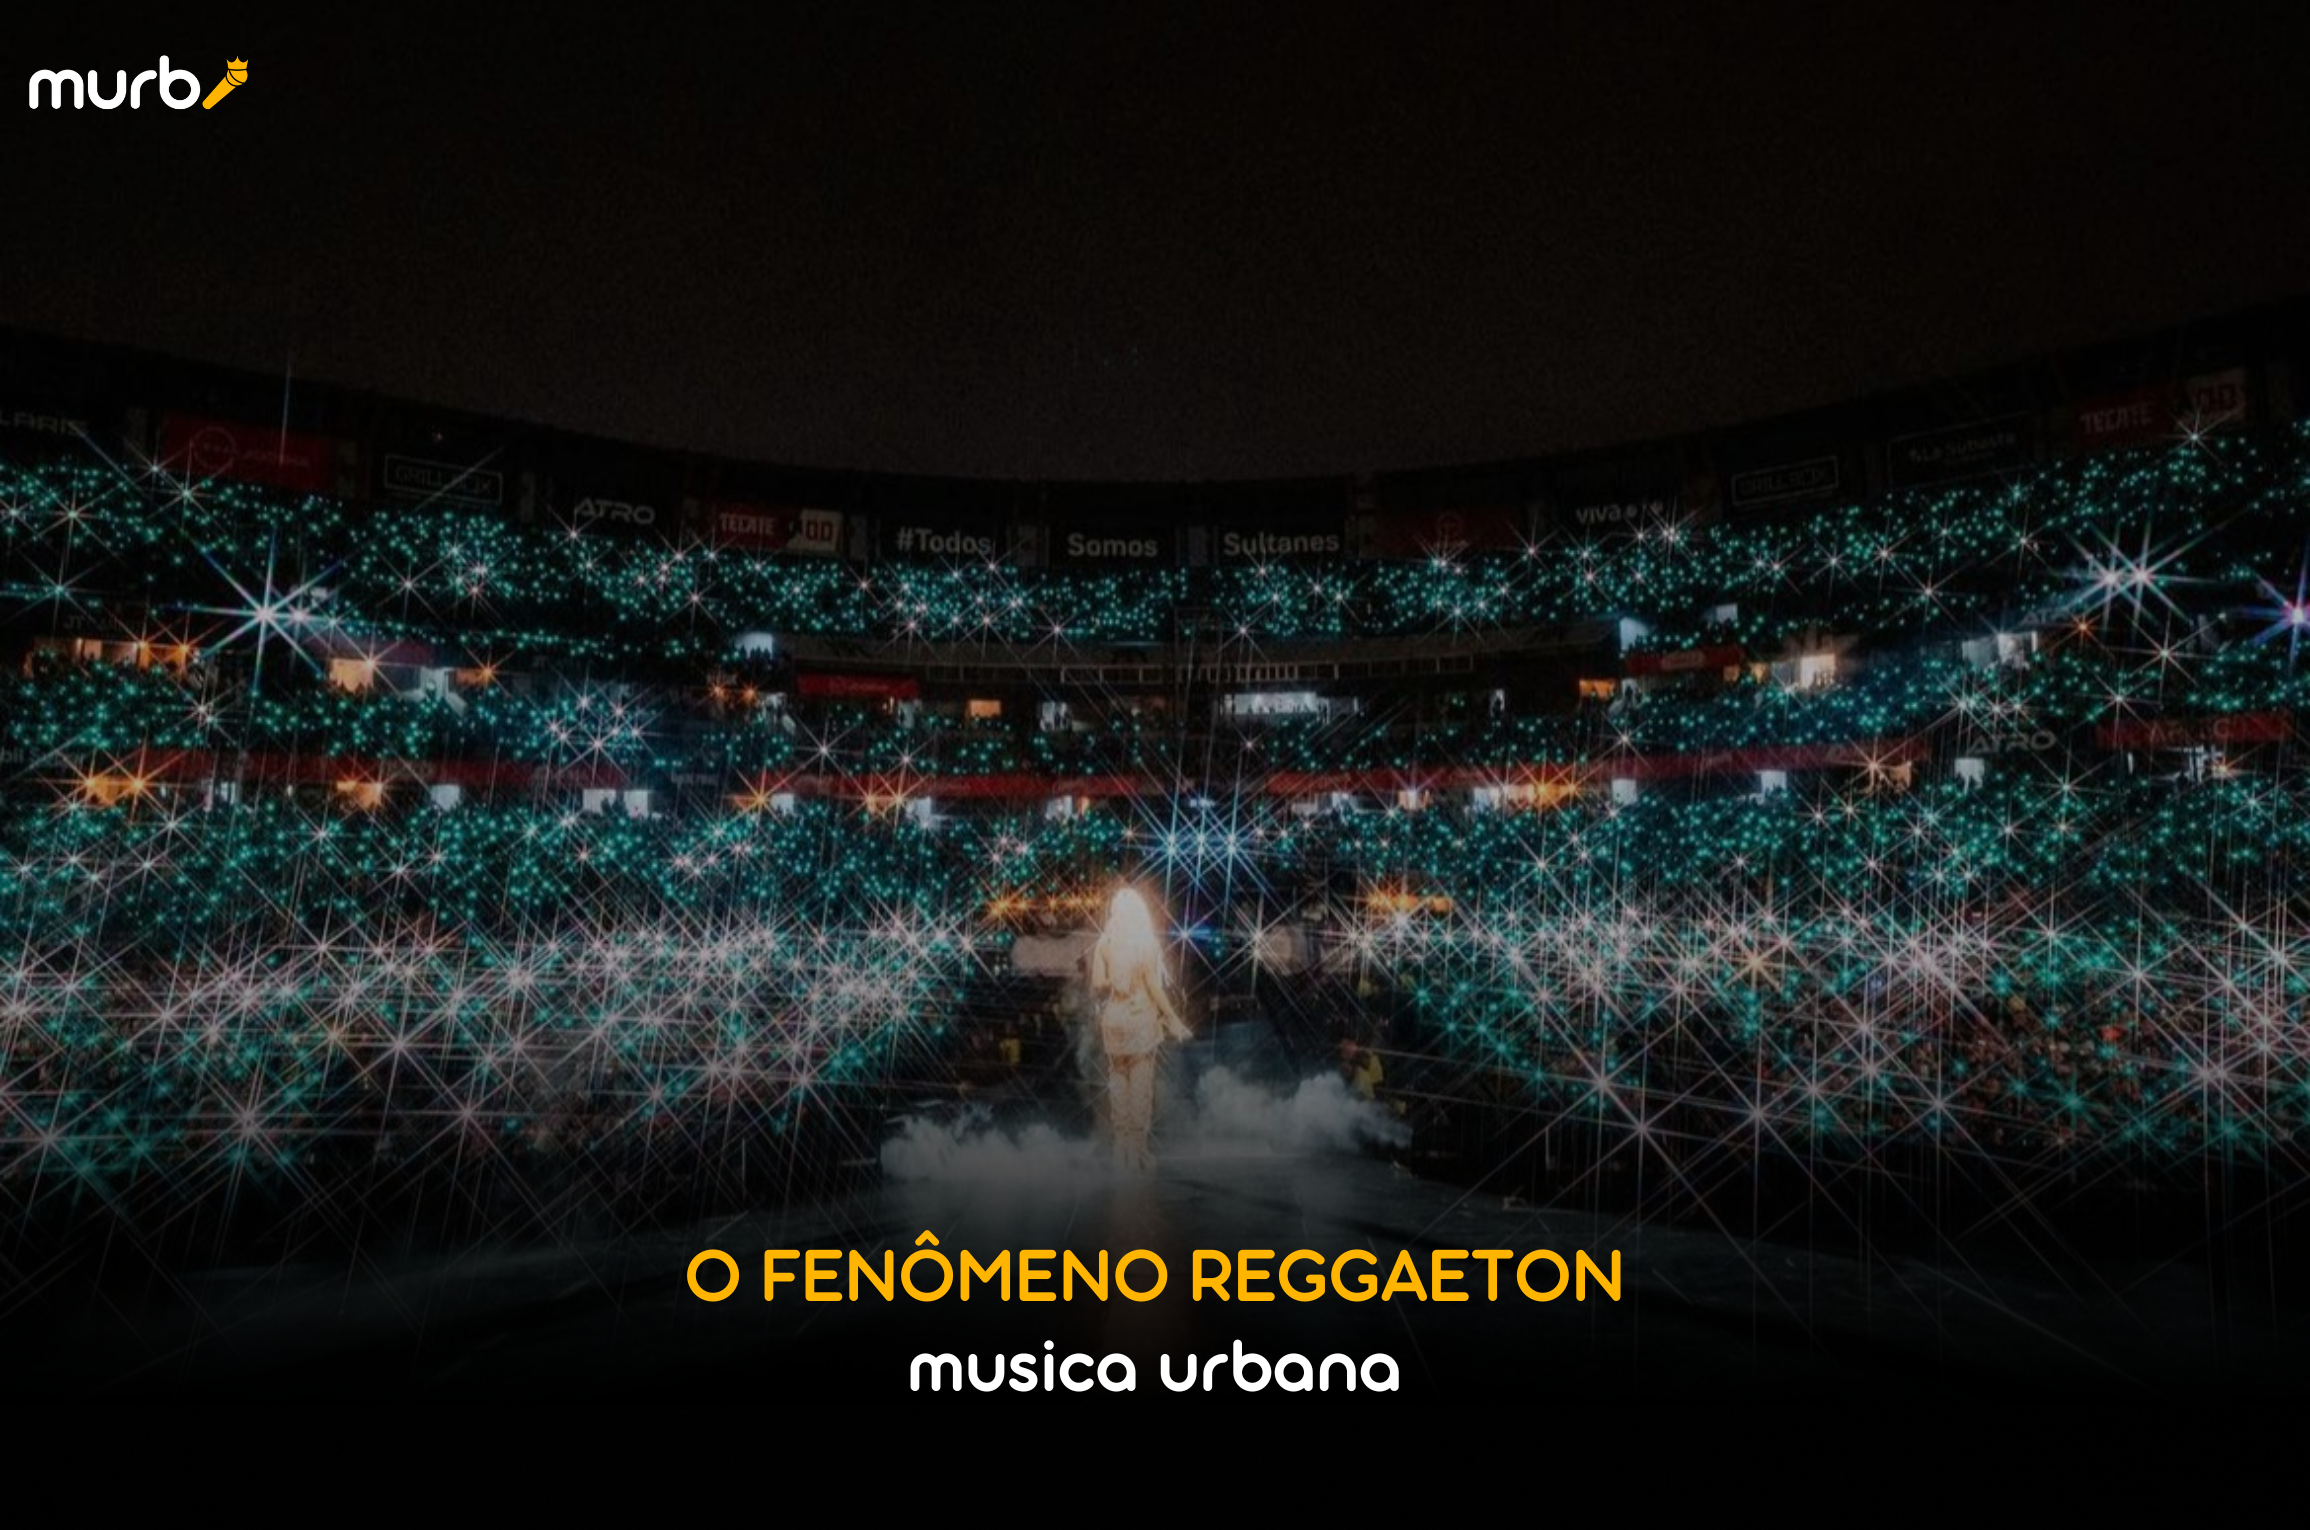 Música Urbana: O que é Reggaeton?